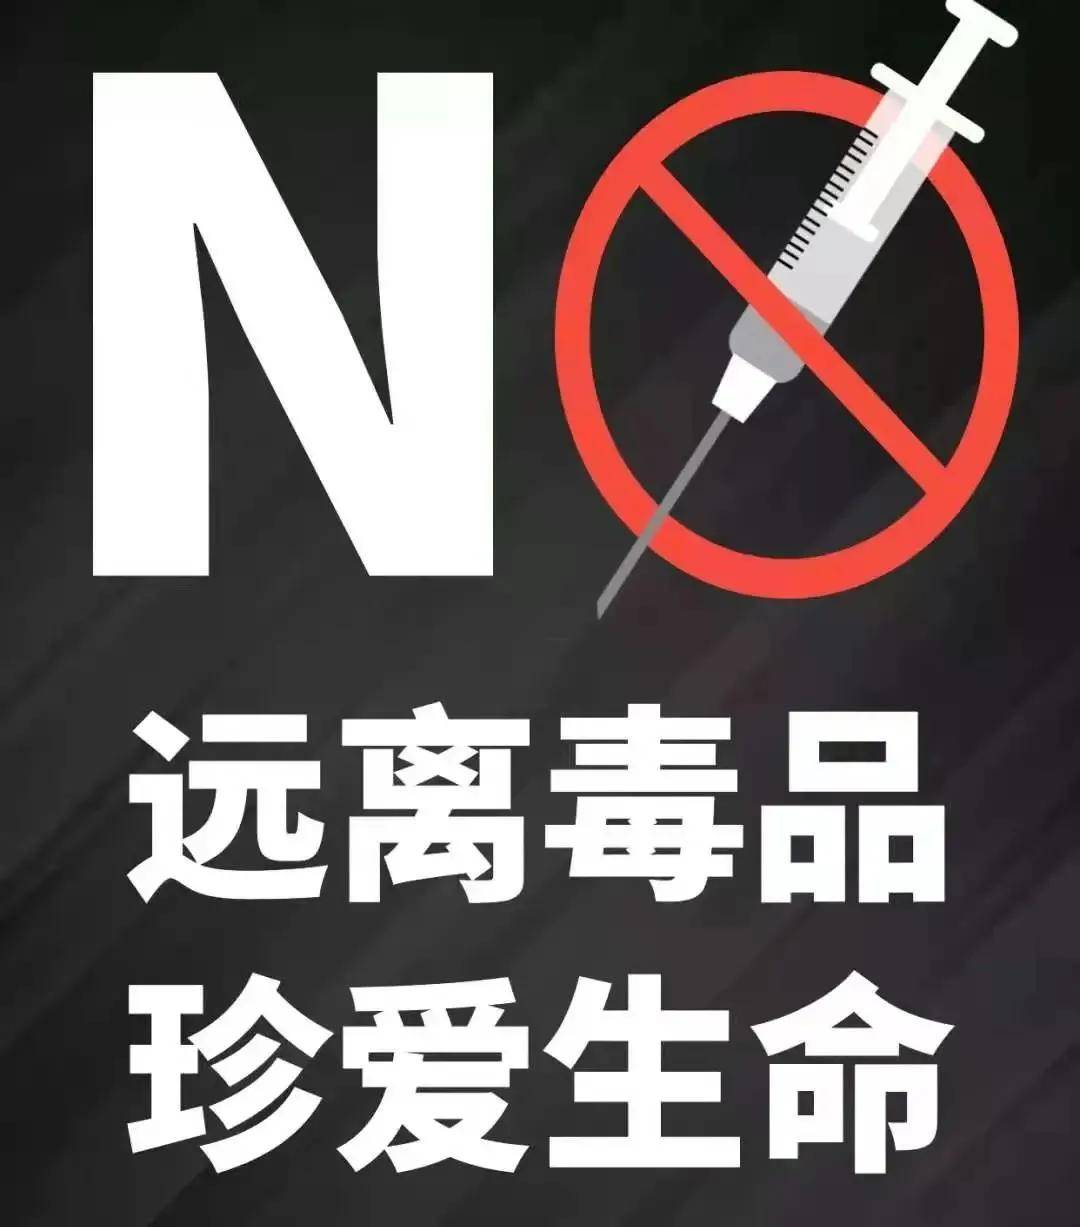 【防范新型毒品对青少年危害】 说"不"是一种能力